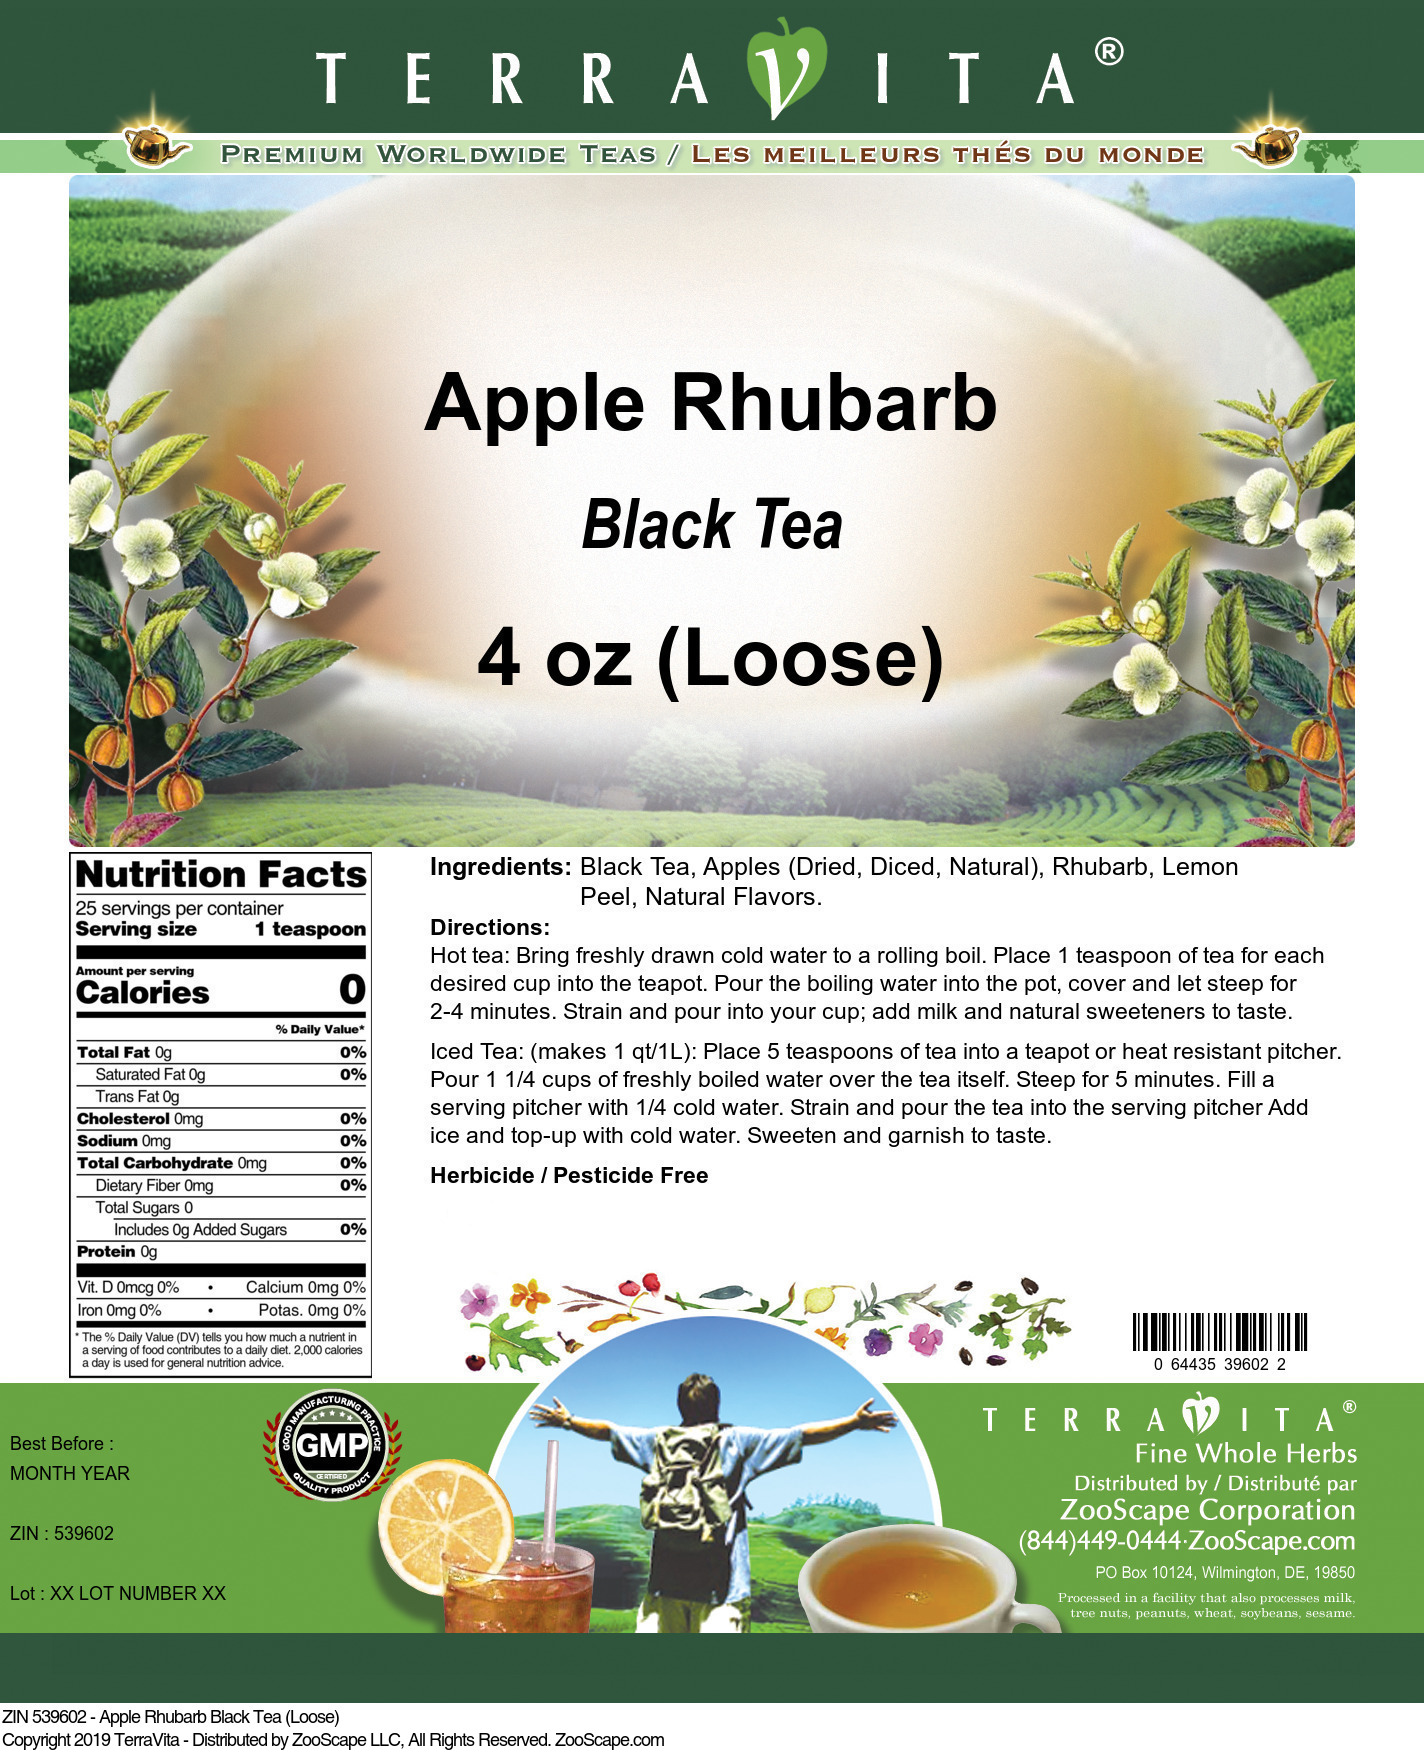 Apple Rhubarb Black Tea (Loose) - Label